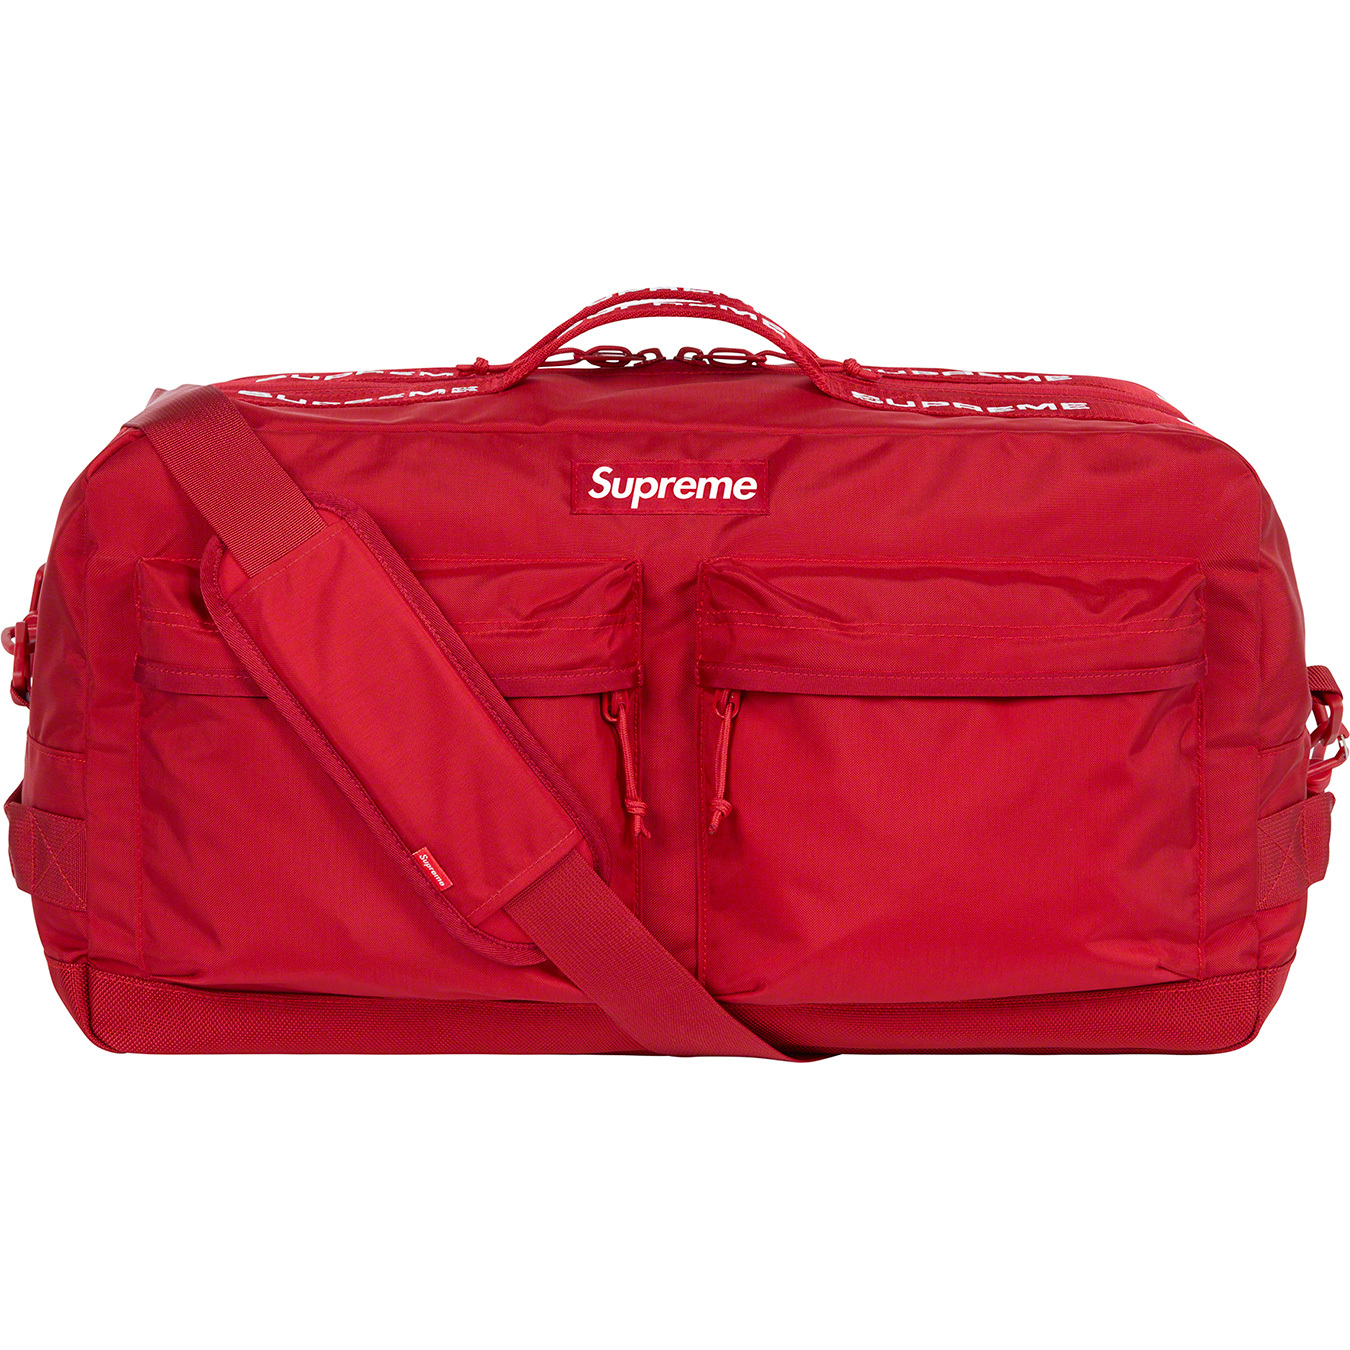 SALE #INSTOCK Supreme Duffle Bag • Water resistant 210D Cordura